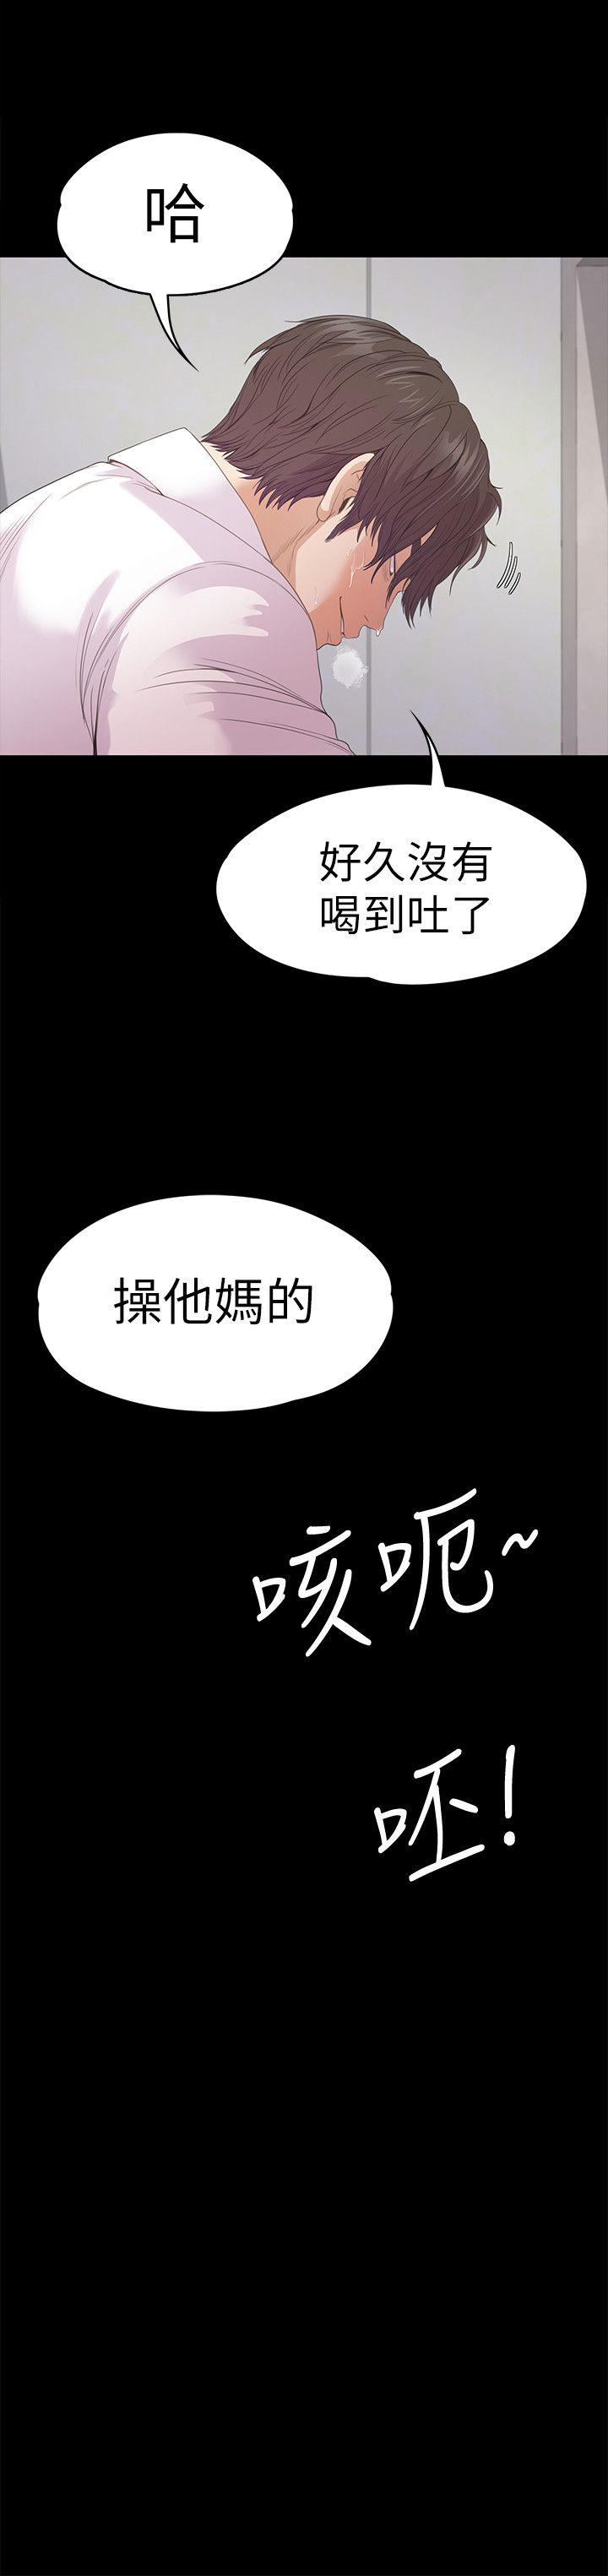 《爱上酒店妹(江南罗曼史)》漫画 第48话-动摇的两人